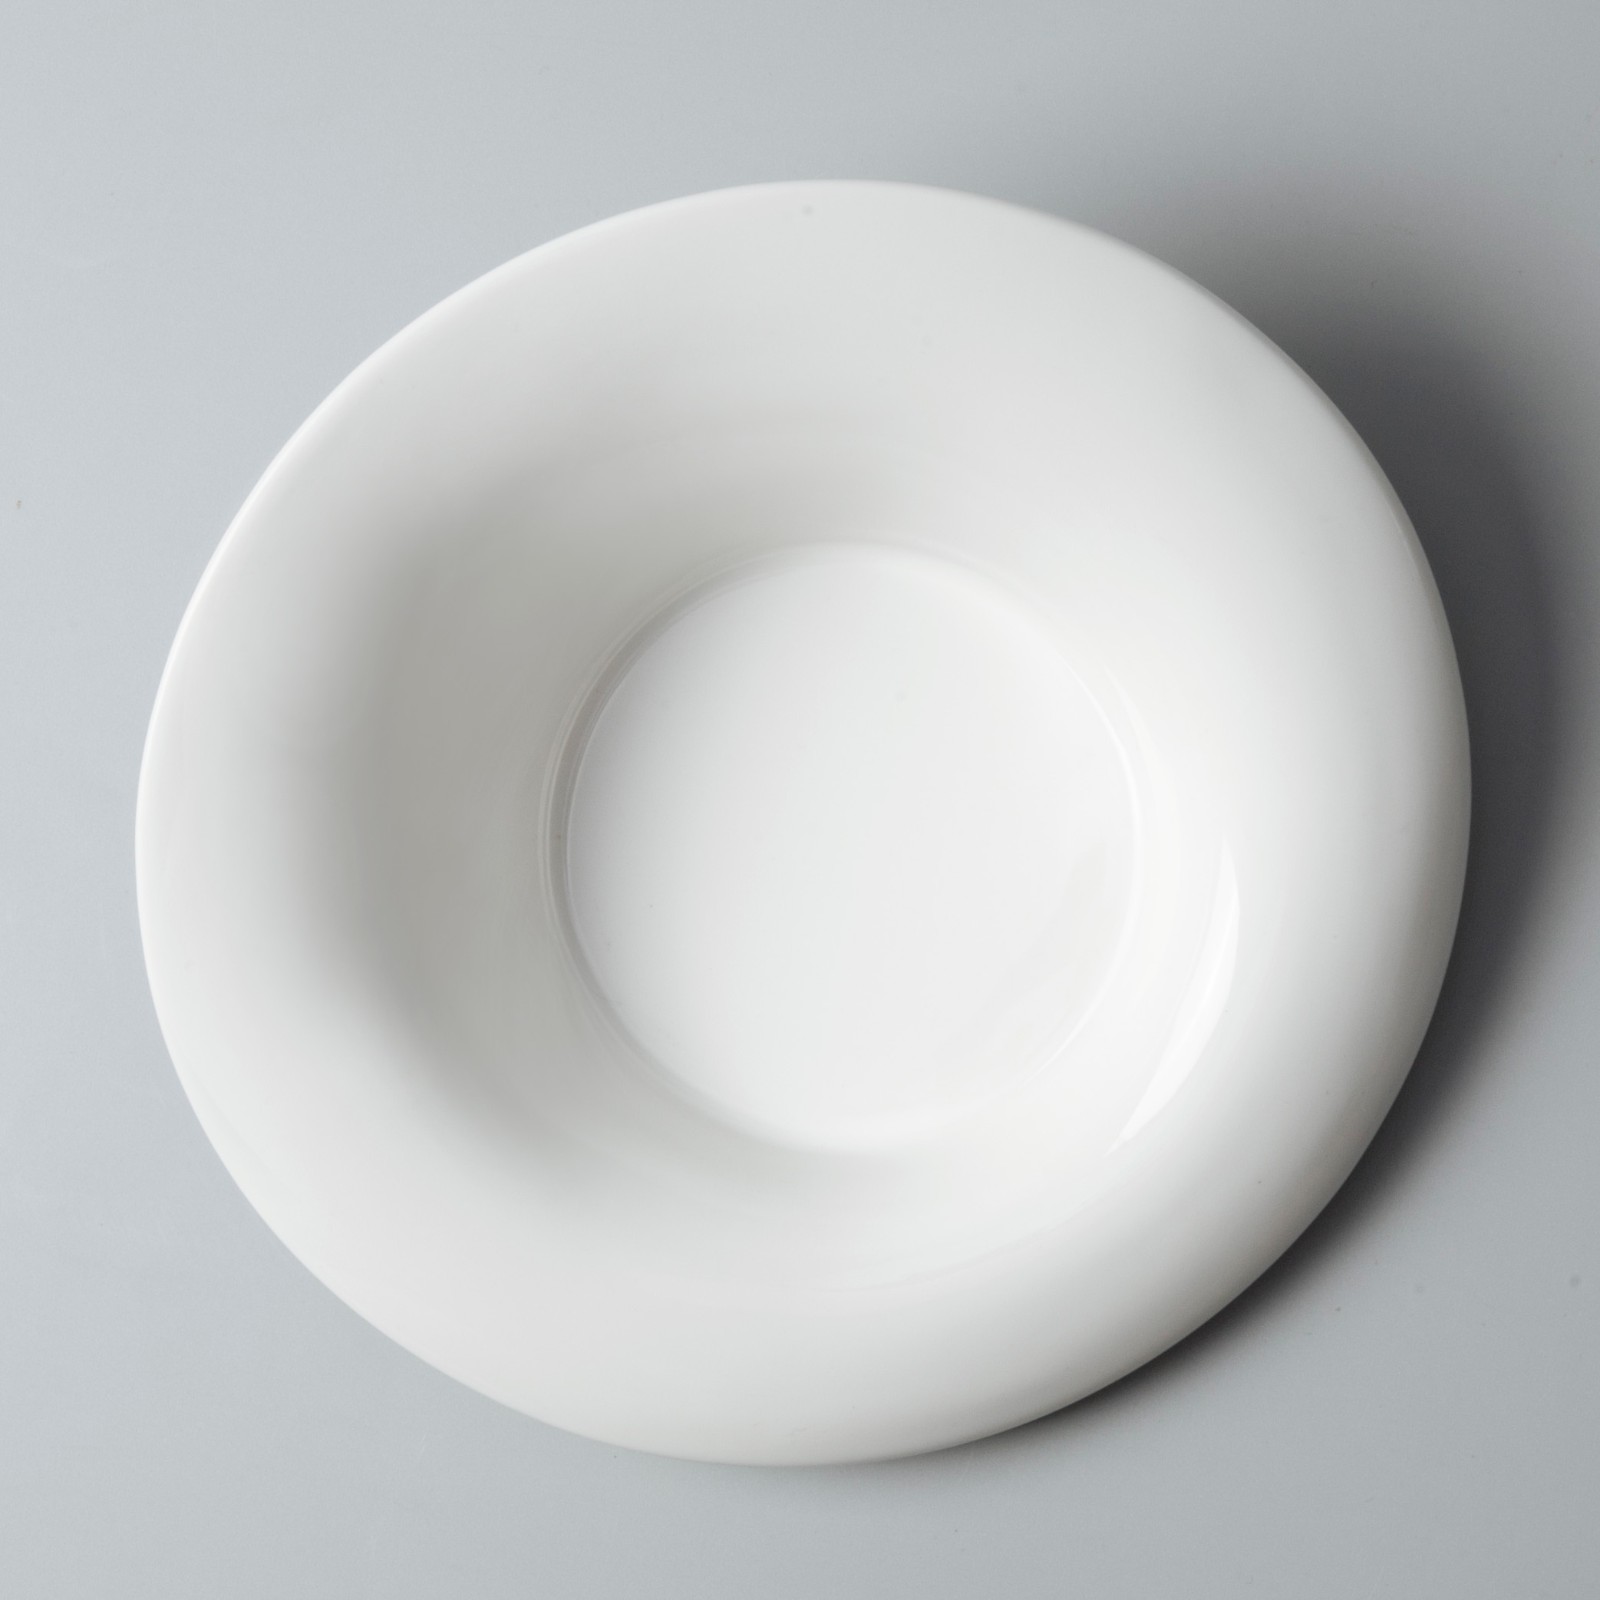 elegant commercial restaurant plates manufacturer for bistro-5